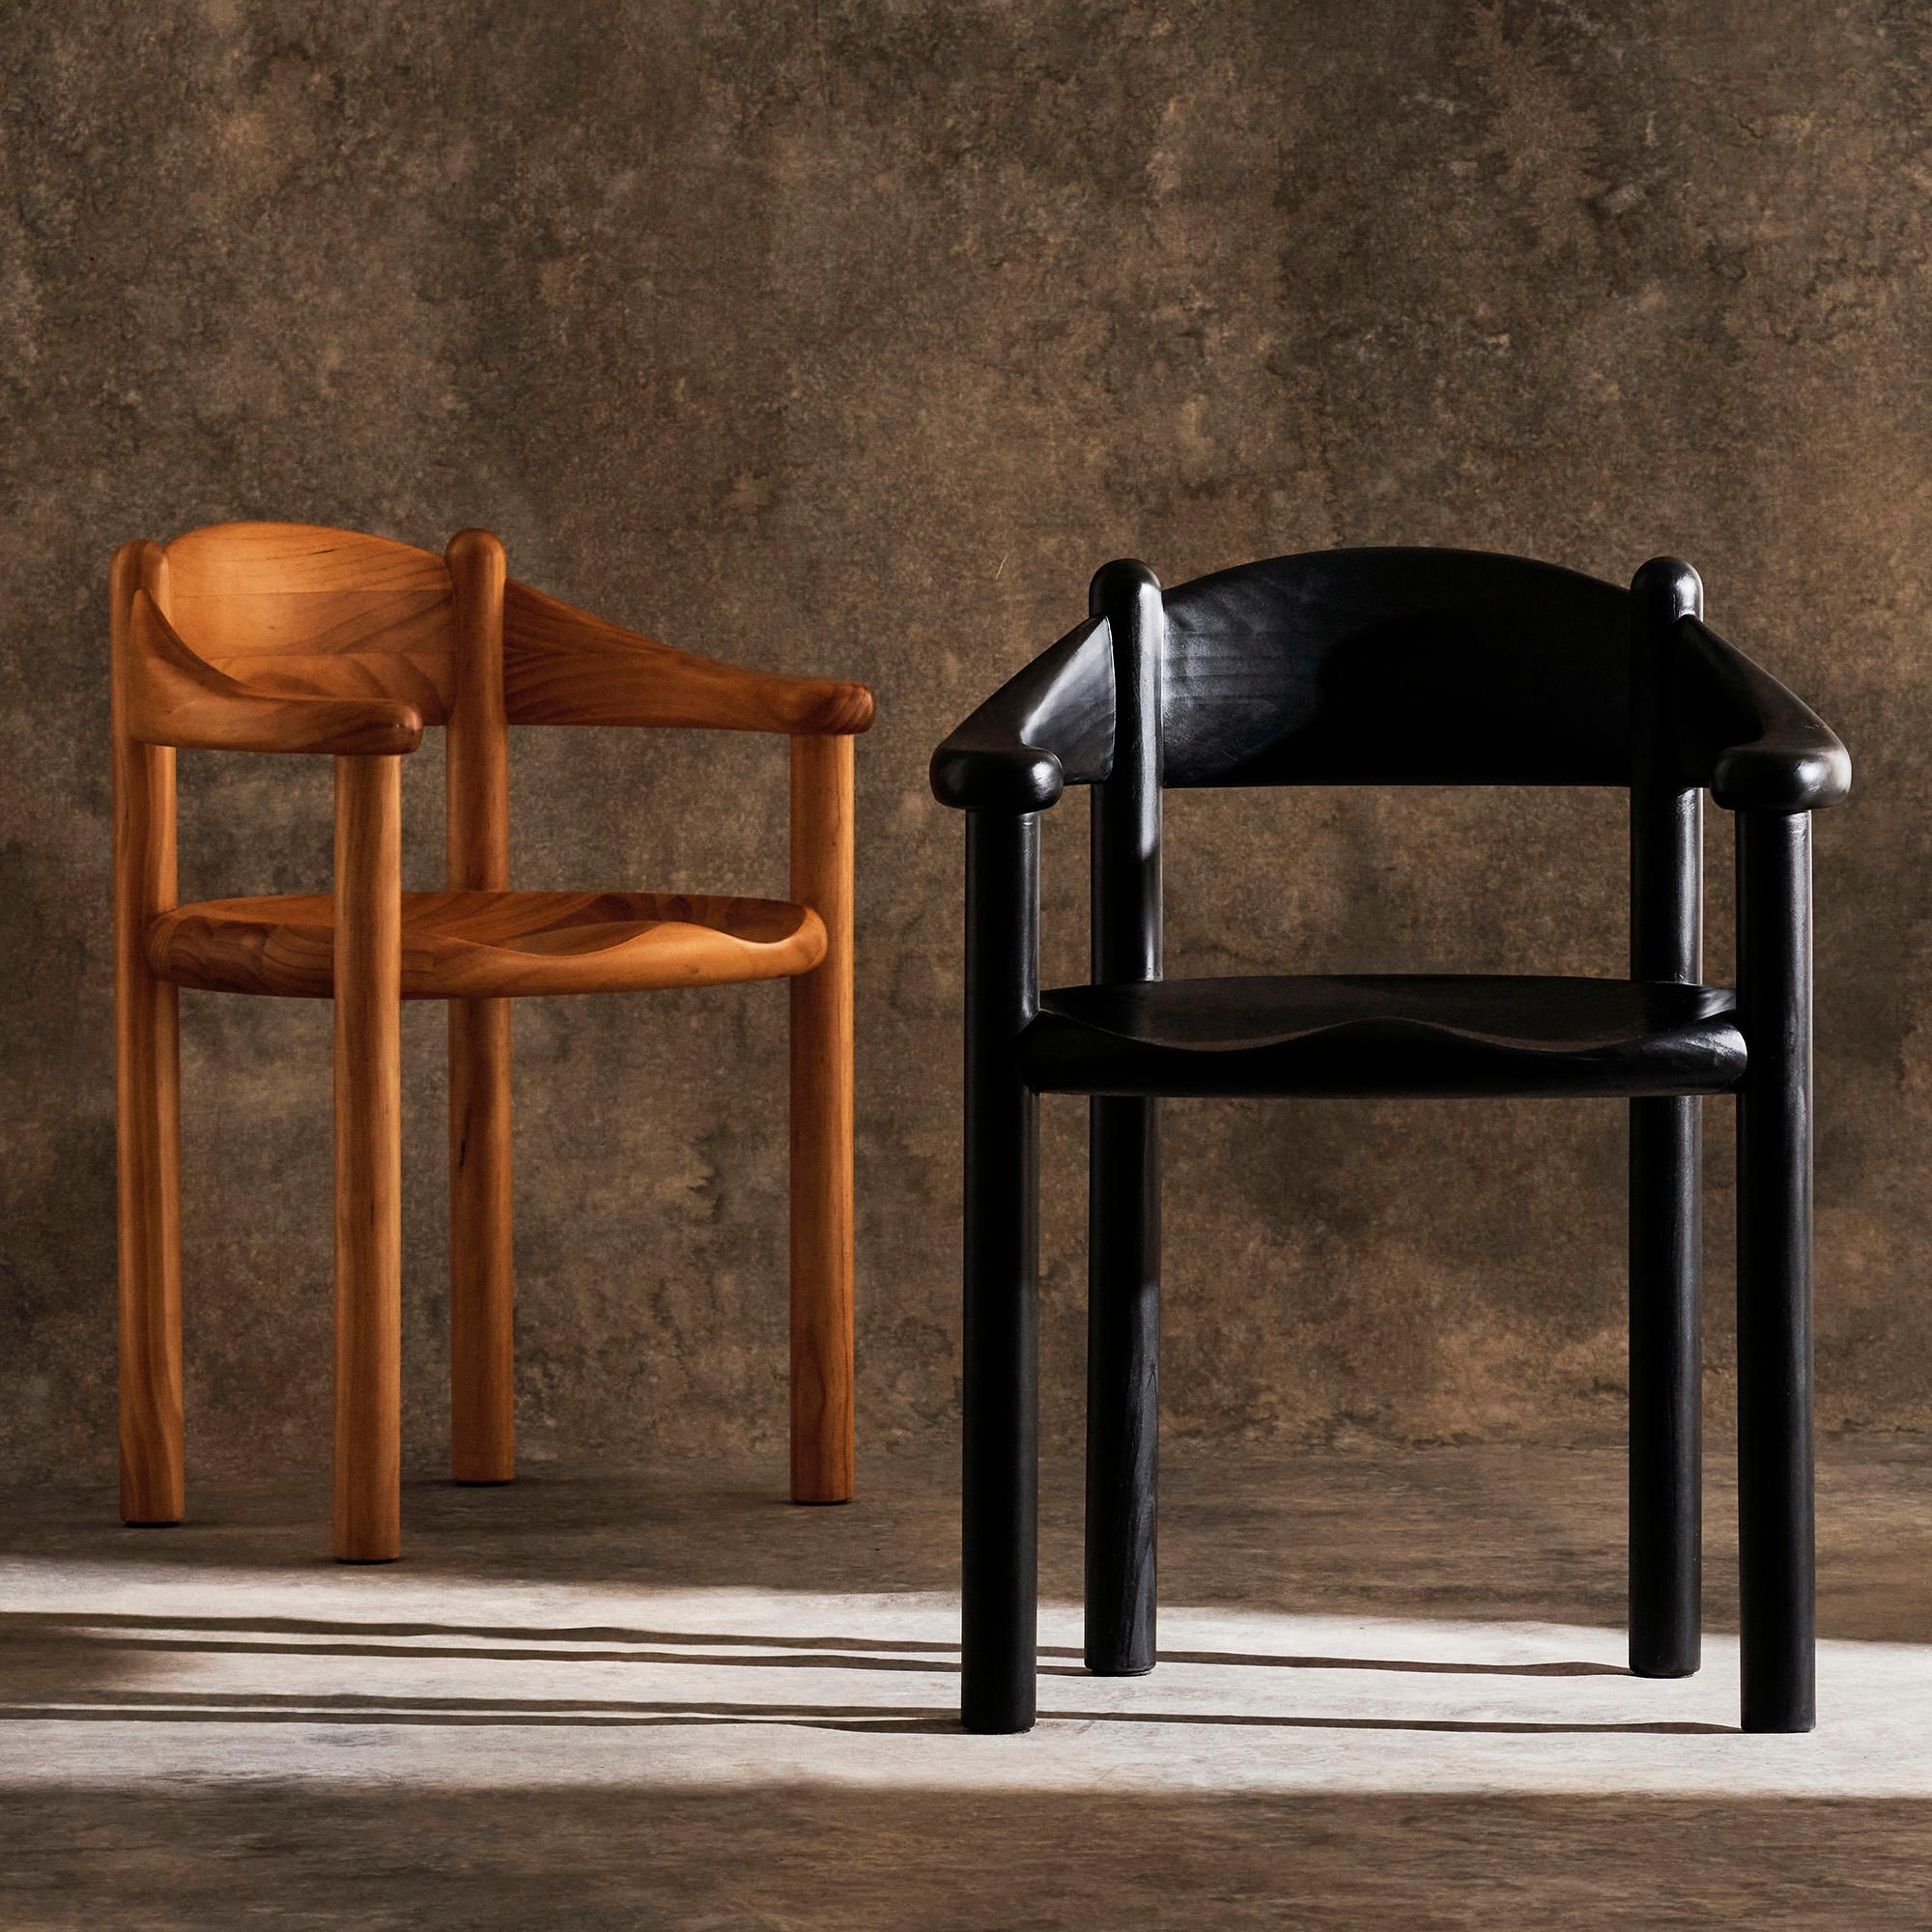 Daumiller Sessel für GUBI in Braun/Schwarzkiefer.

Solide in der Konstruktion, einfach in der Form und skulptural im Ausdruck, spiegelt der Daumiller Sessel die lebenslange Vorliebe des Designers Rainer Daumiller für natürliche Materialien und